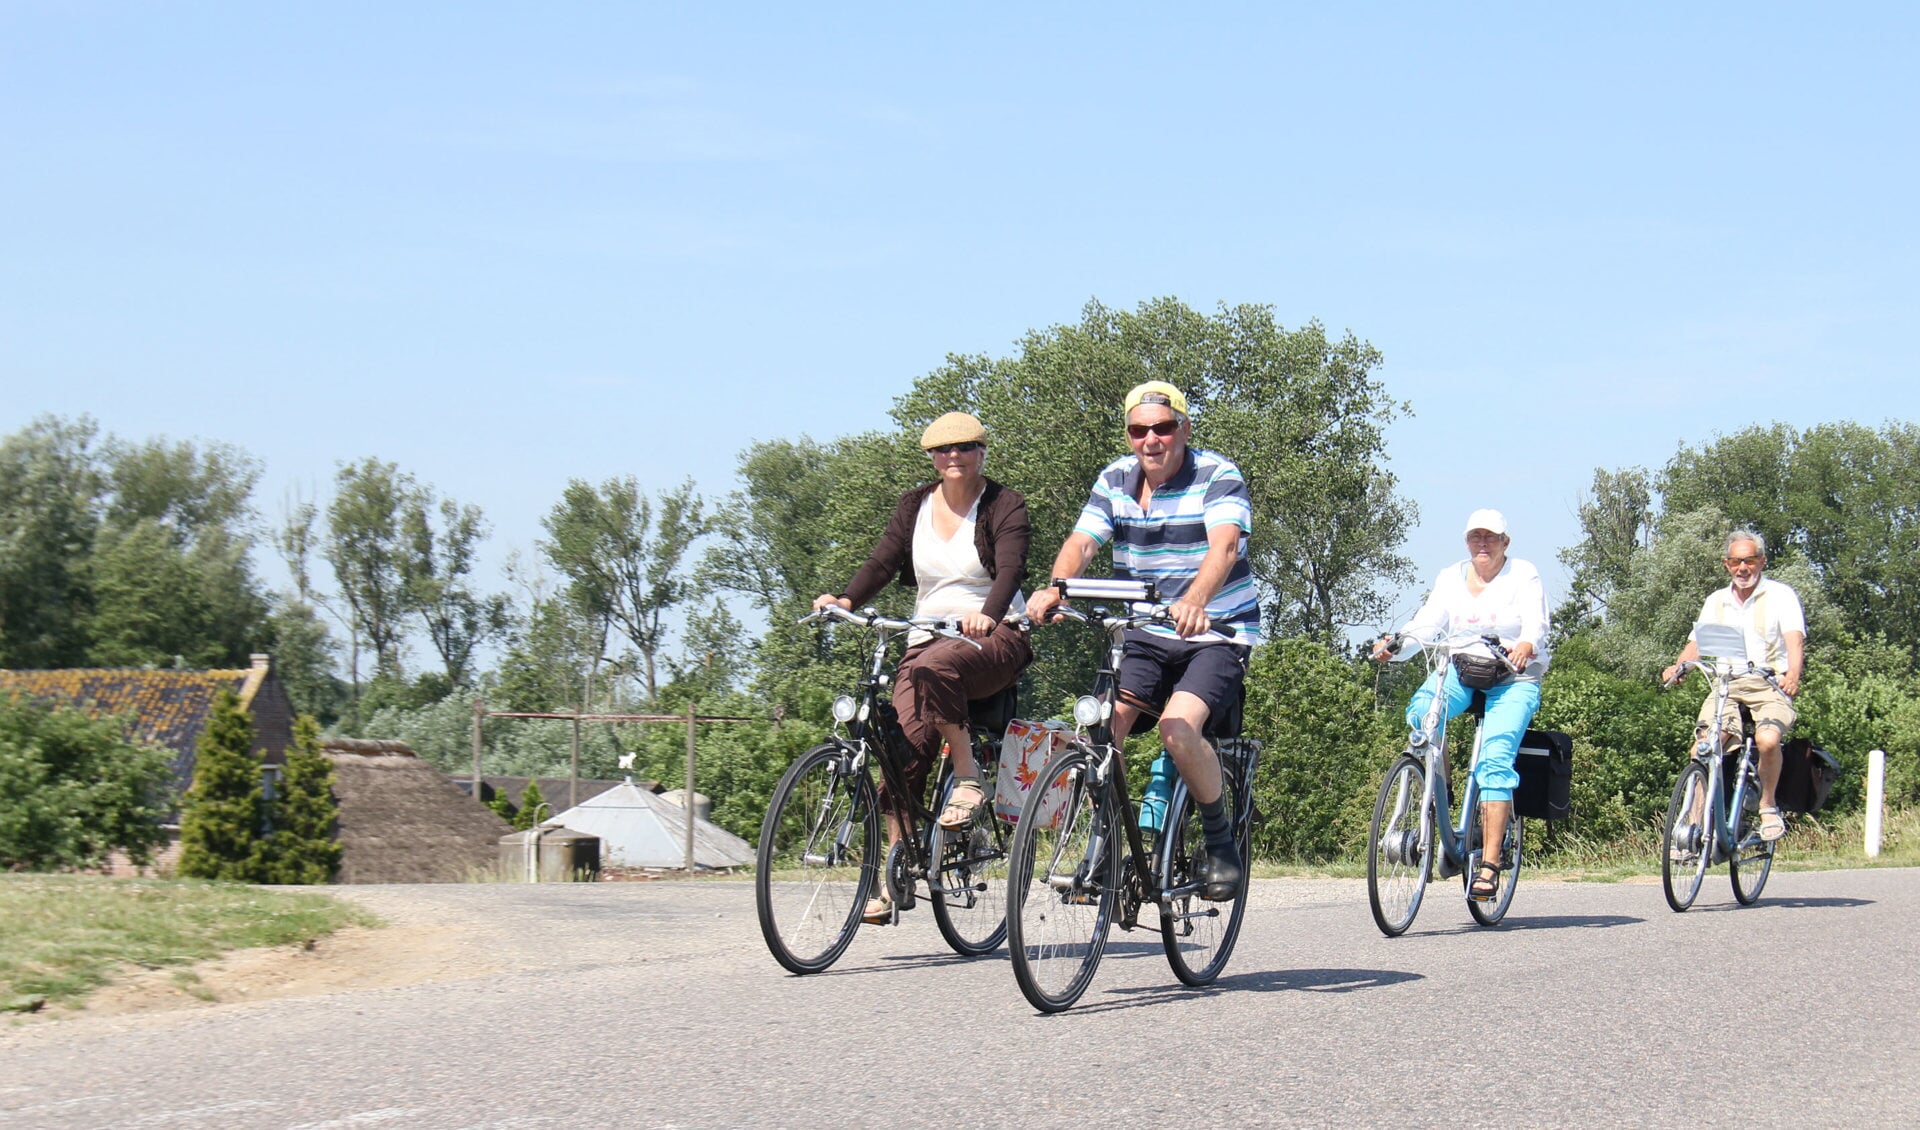 • Muziekvereniging Excelsior Genderen organiseert op zaterdag 4 september een fietstocht voor jong en oud.